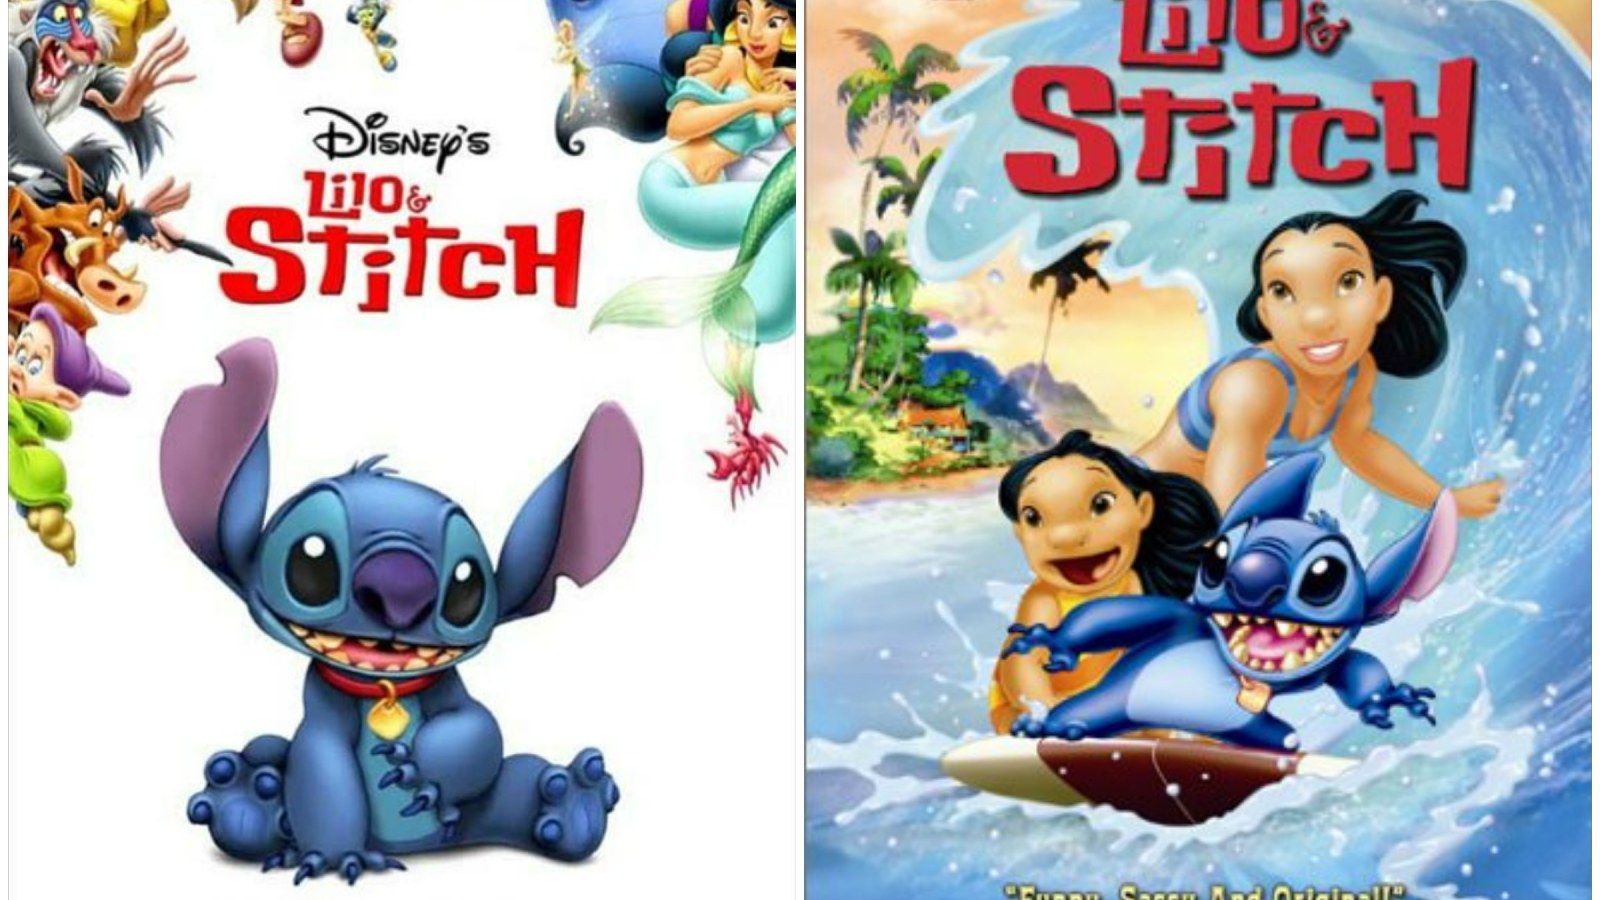 Resource - Lilo & Stitch: Film Guide - Into Film